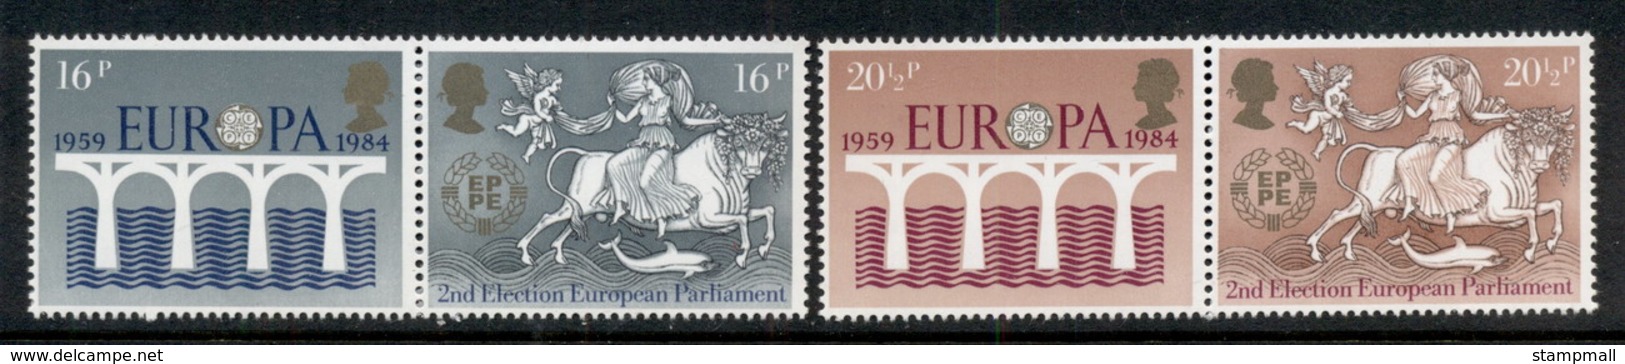 GB 1984 Europa, European Parliament MUH - Ohne Zuordnung